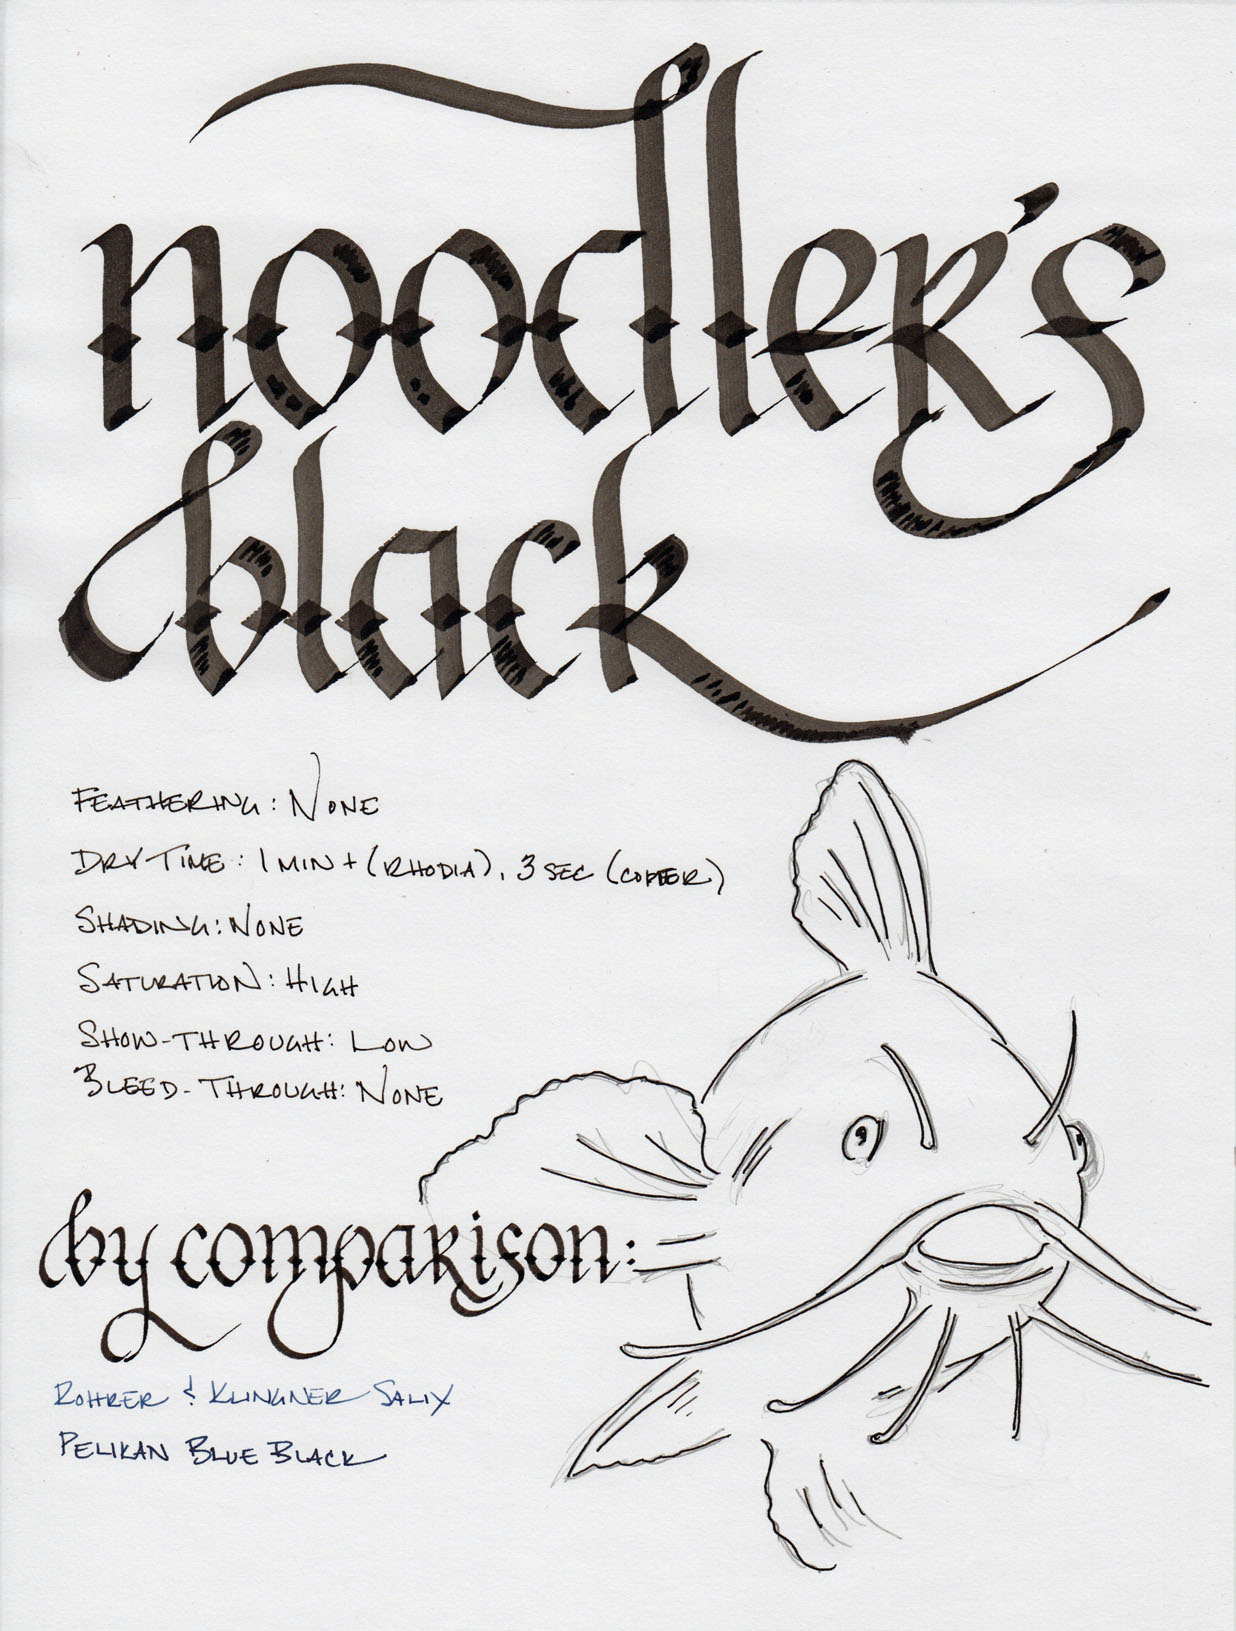 noodler’s black revisited